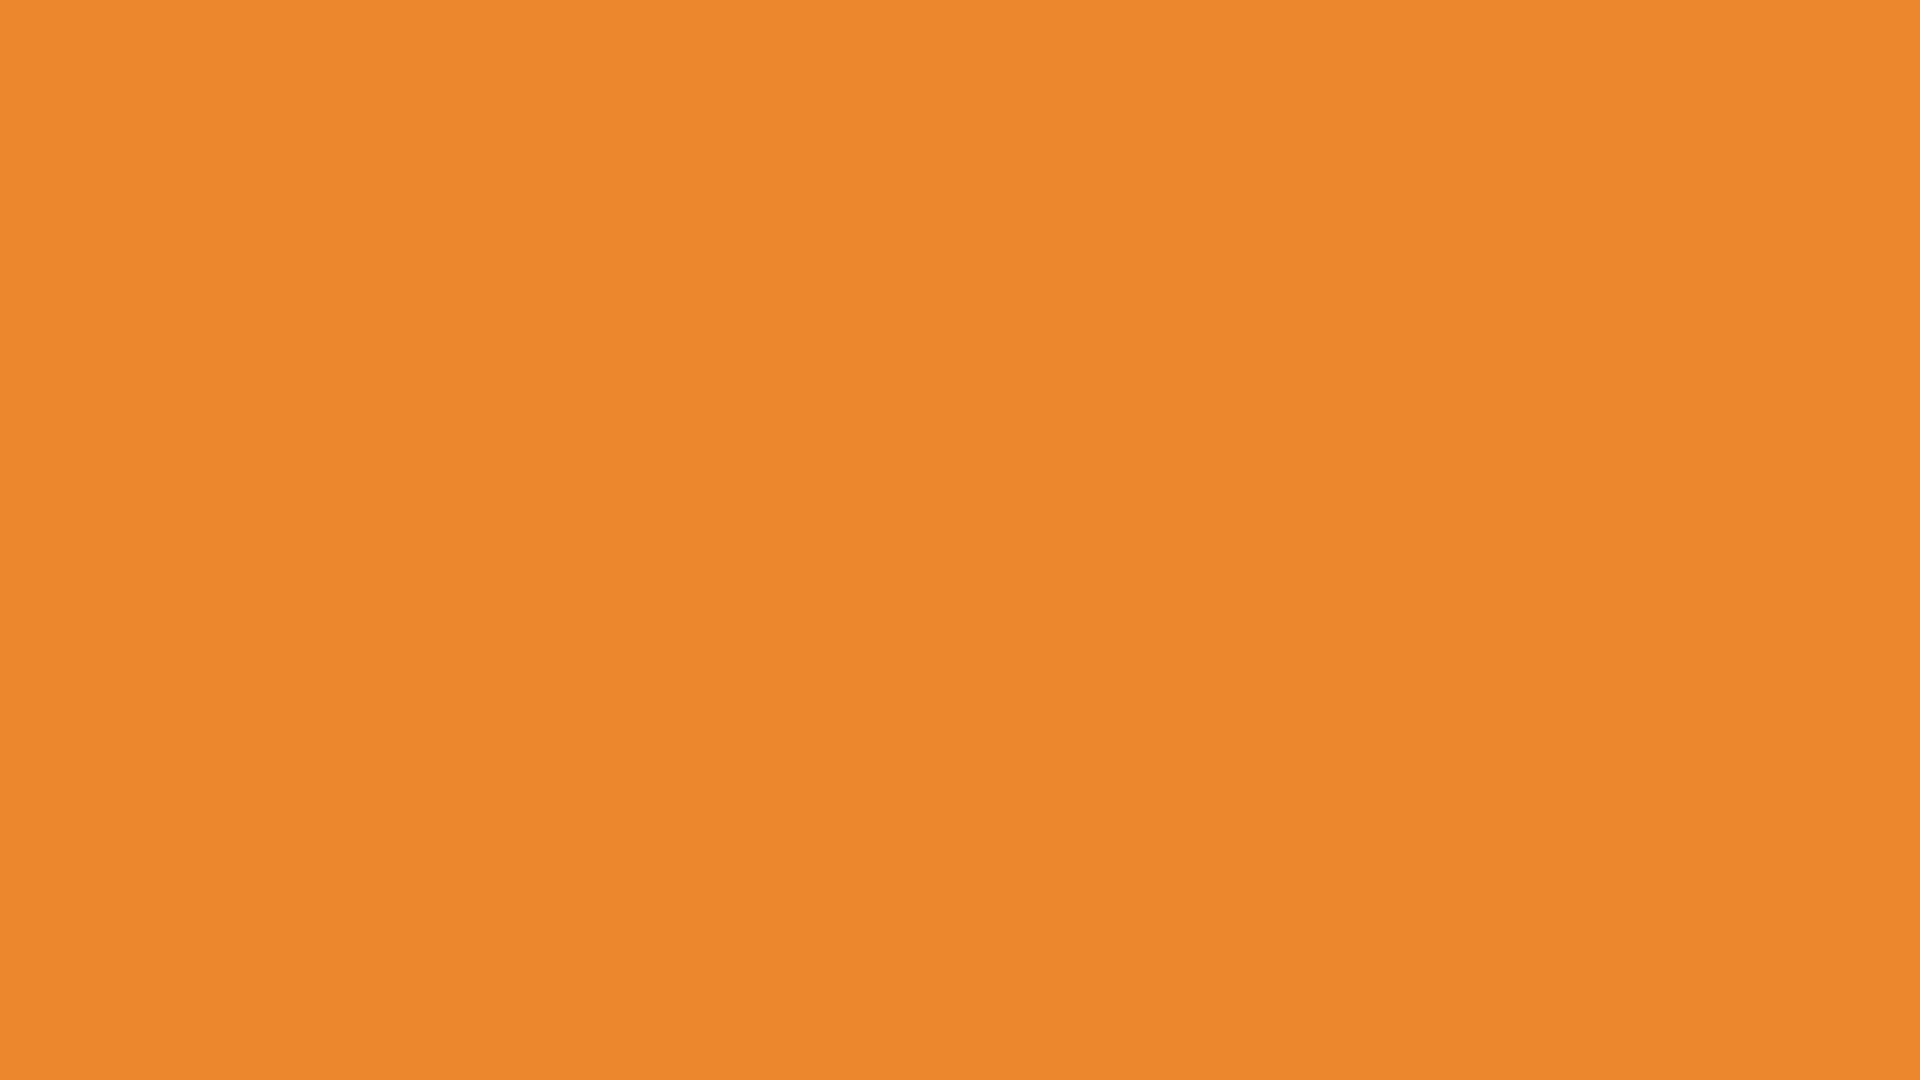 Nền màu cam đậm: Màu cam đậm chính là màu sắc độc đáo và đầy cá tính. Với những bức ảnh nền màu cam đậm, chắc chắn sẽ thu hút sự chú ý của bạn bè và người xung quanh.